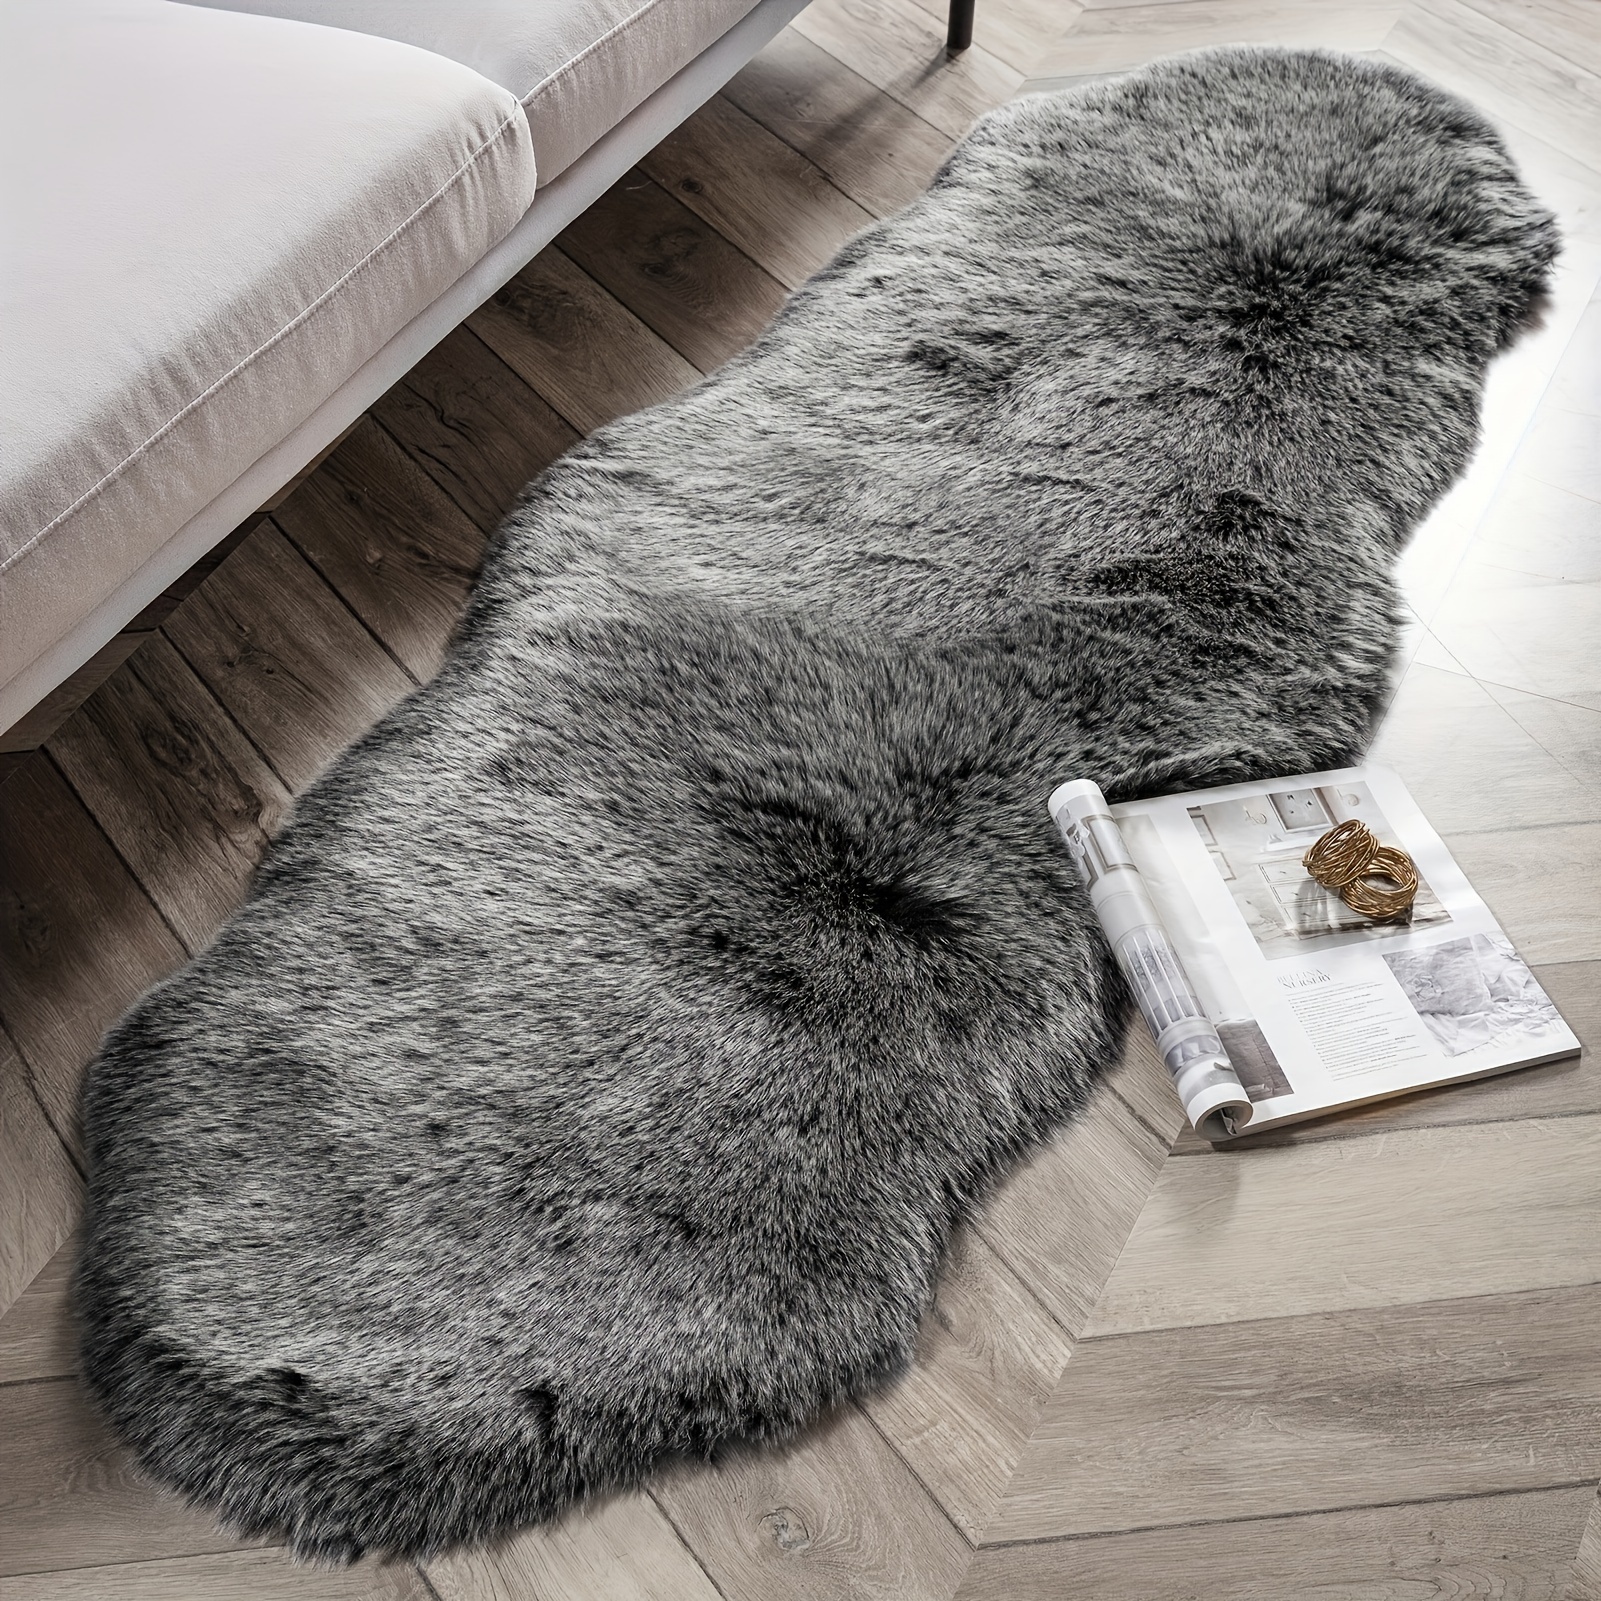 

Soft Fluffy Plush Faux Fox Fur Shag Rug, Home Decor 2 X 6 Feet 1 Pack